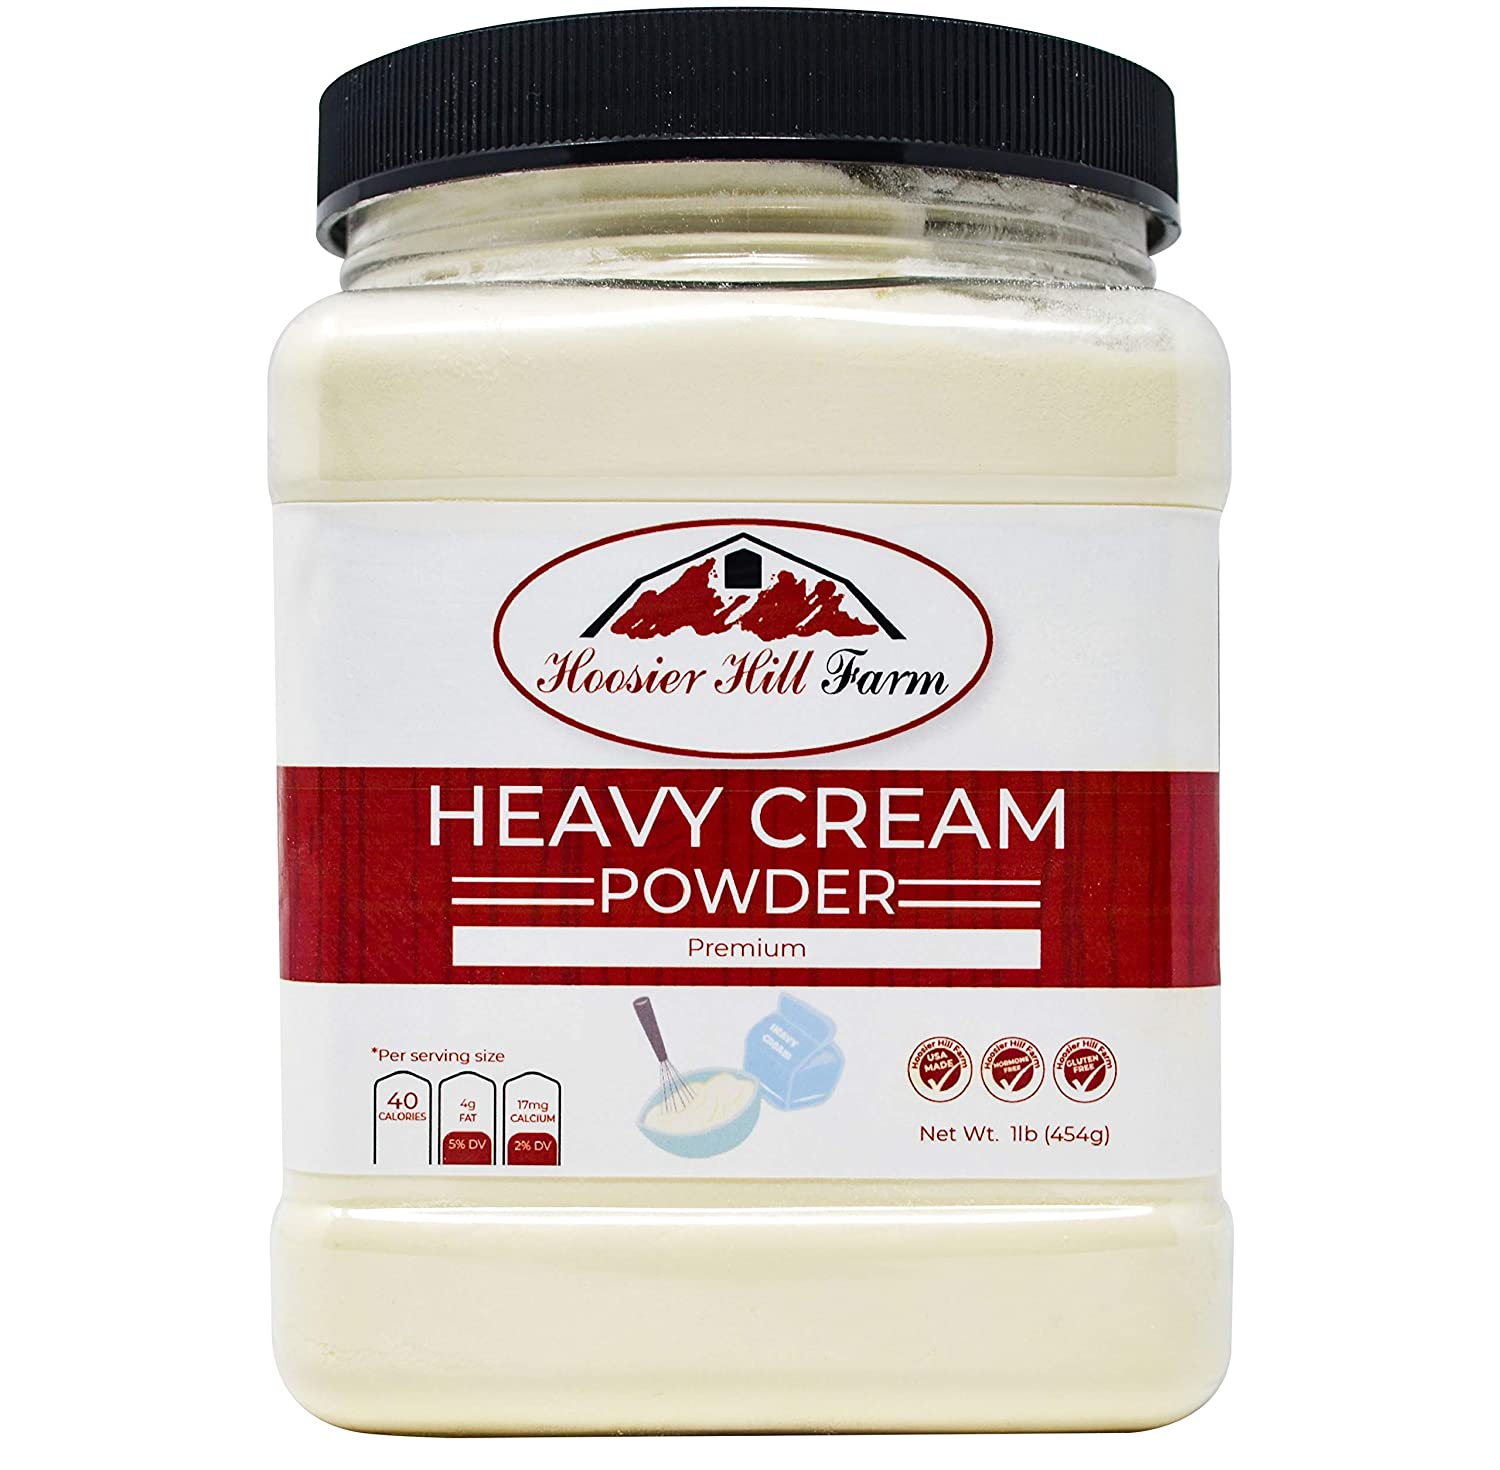 Heavy cream